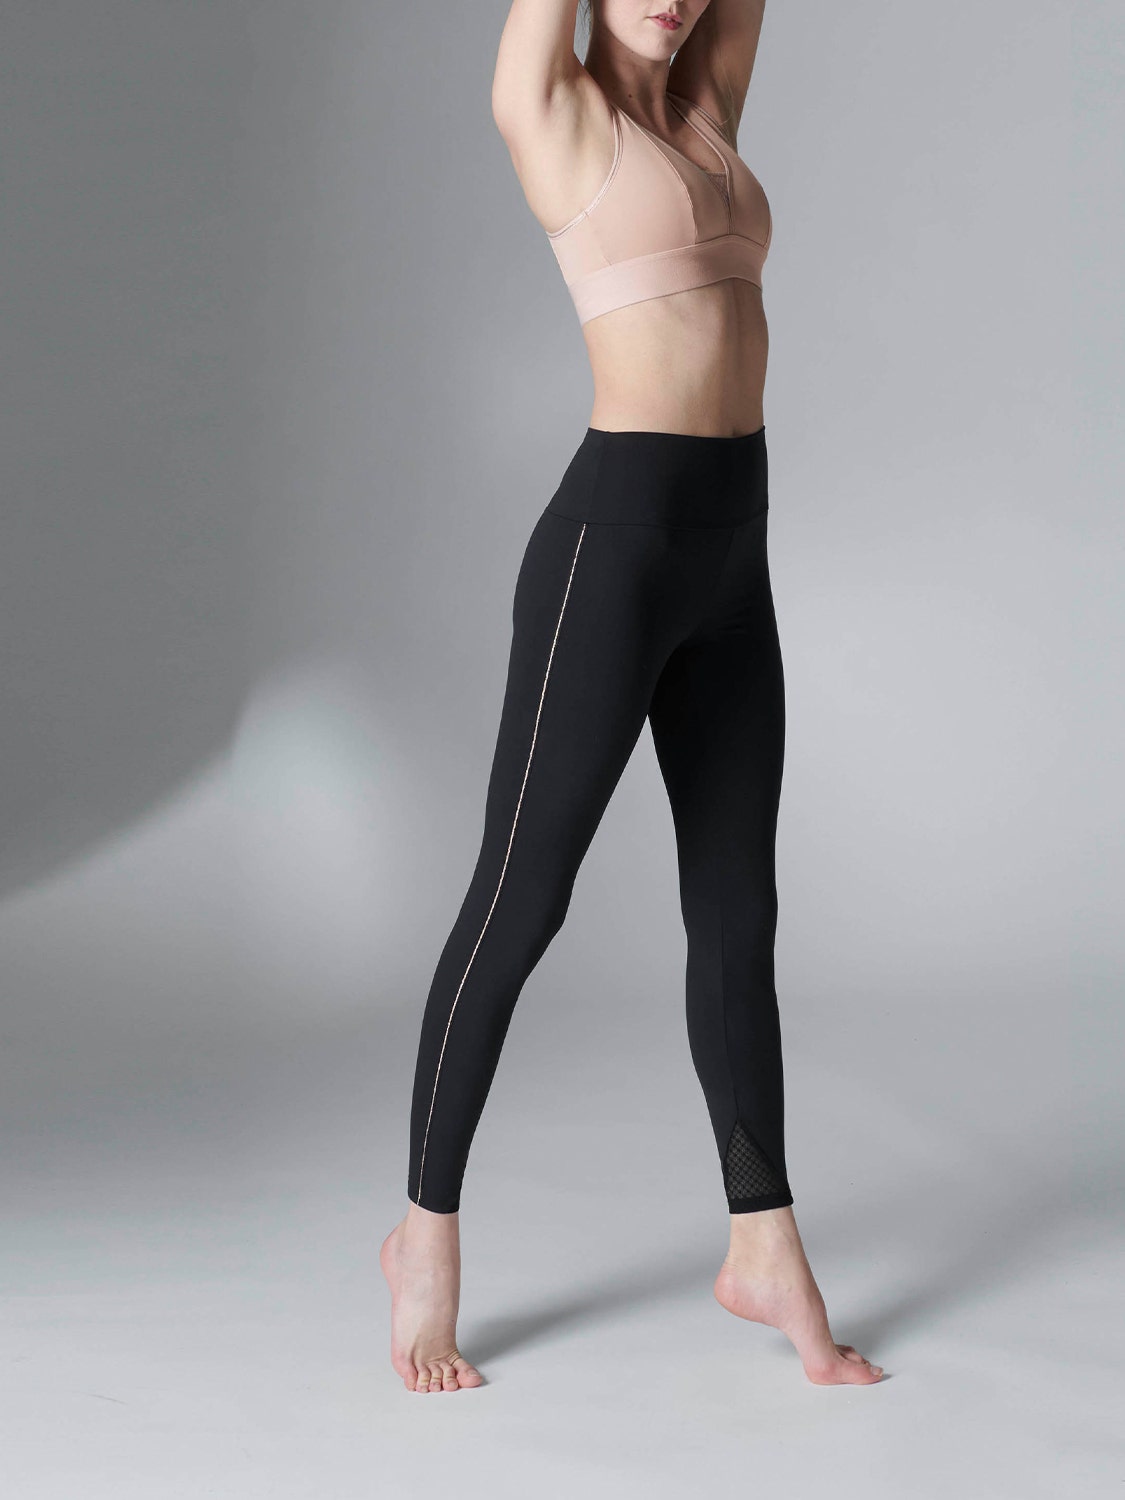 Flowergy Full-Length Leggings by Chandra Yoga & Active Wear